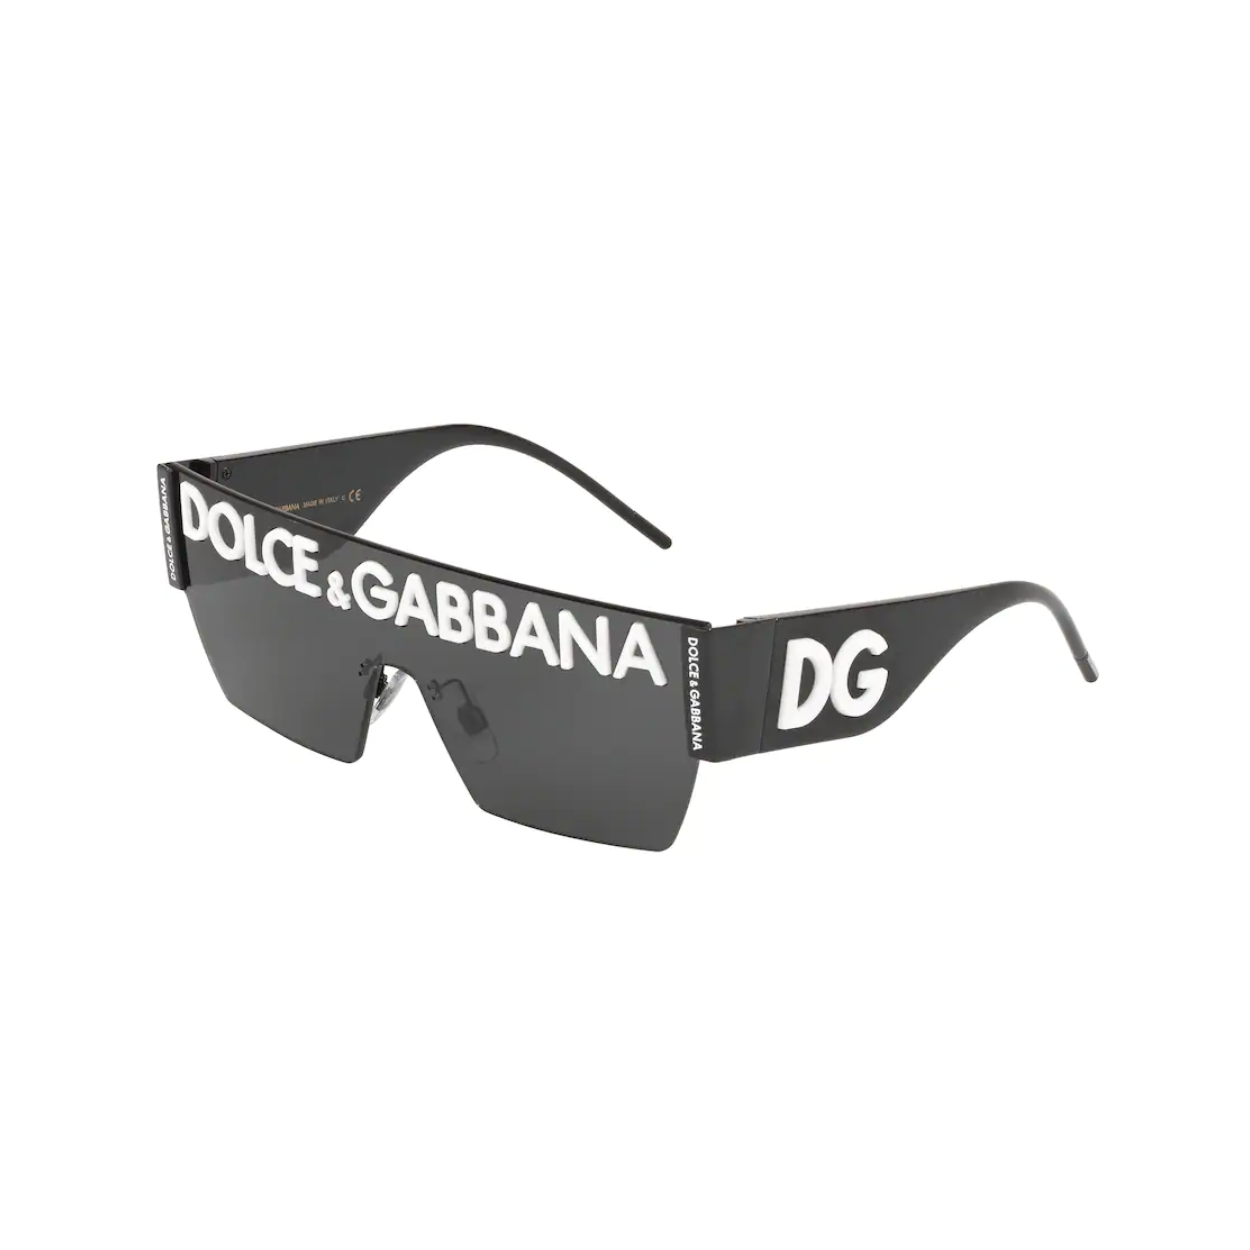 d&g sunglasses